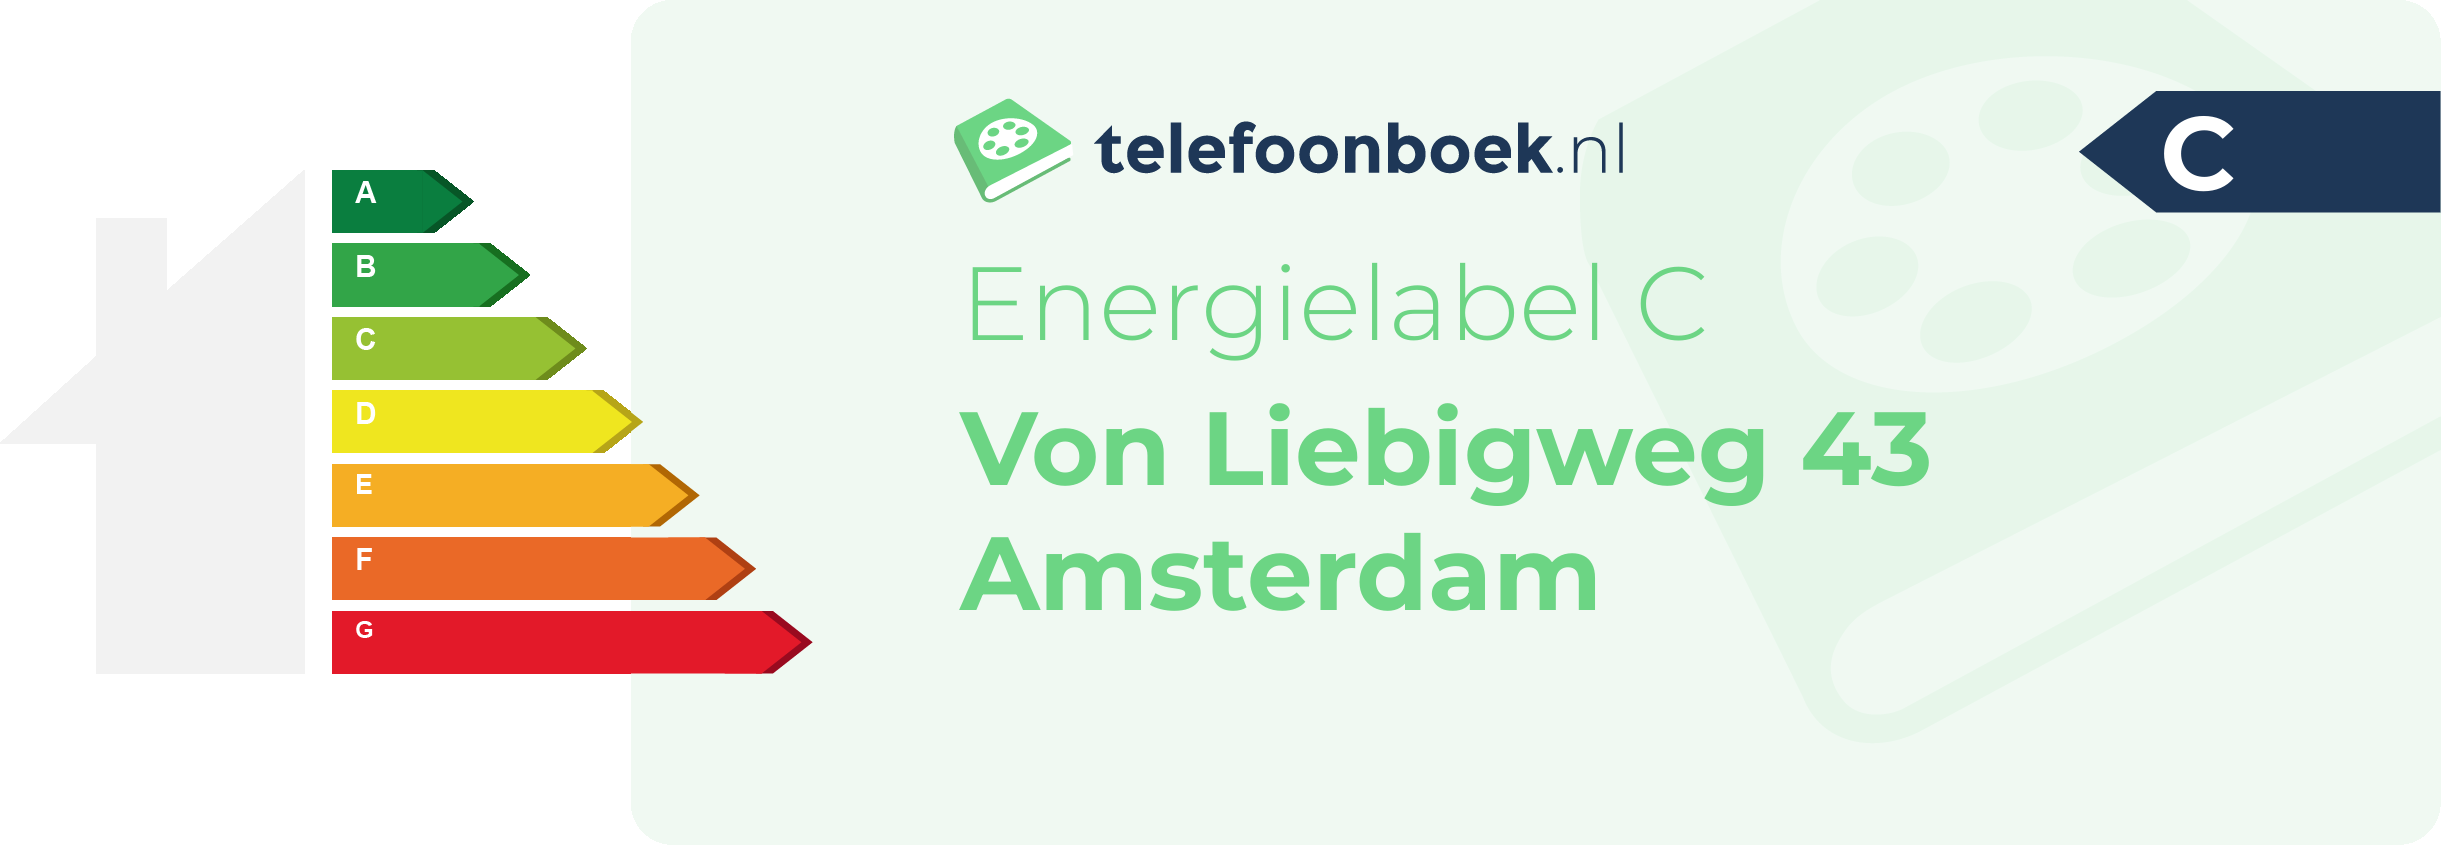 Energielabel Von Liebigweg 43 Amsterdam